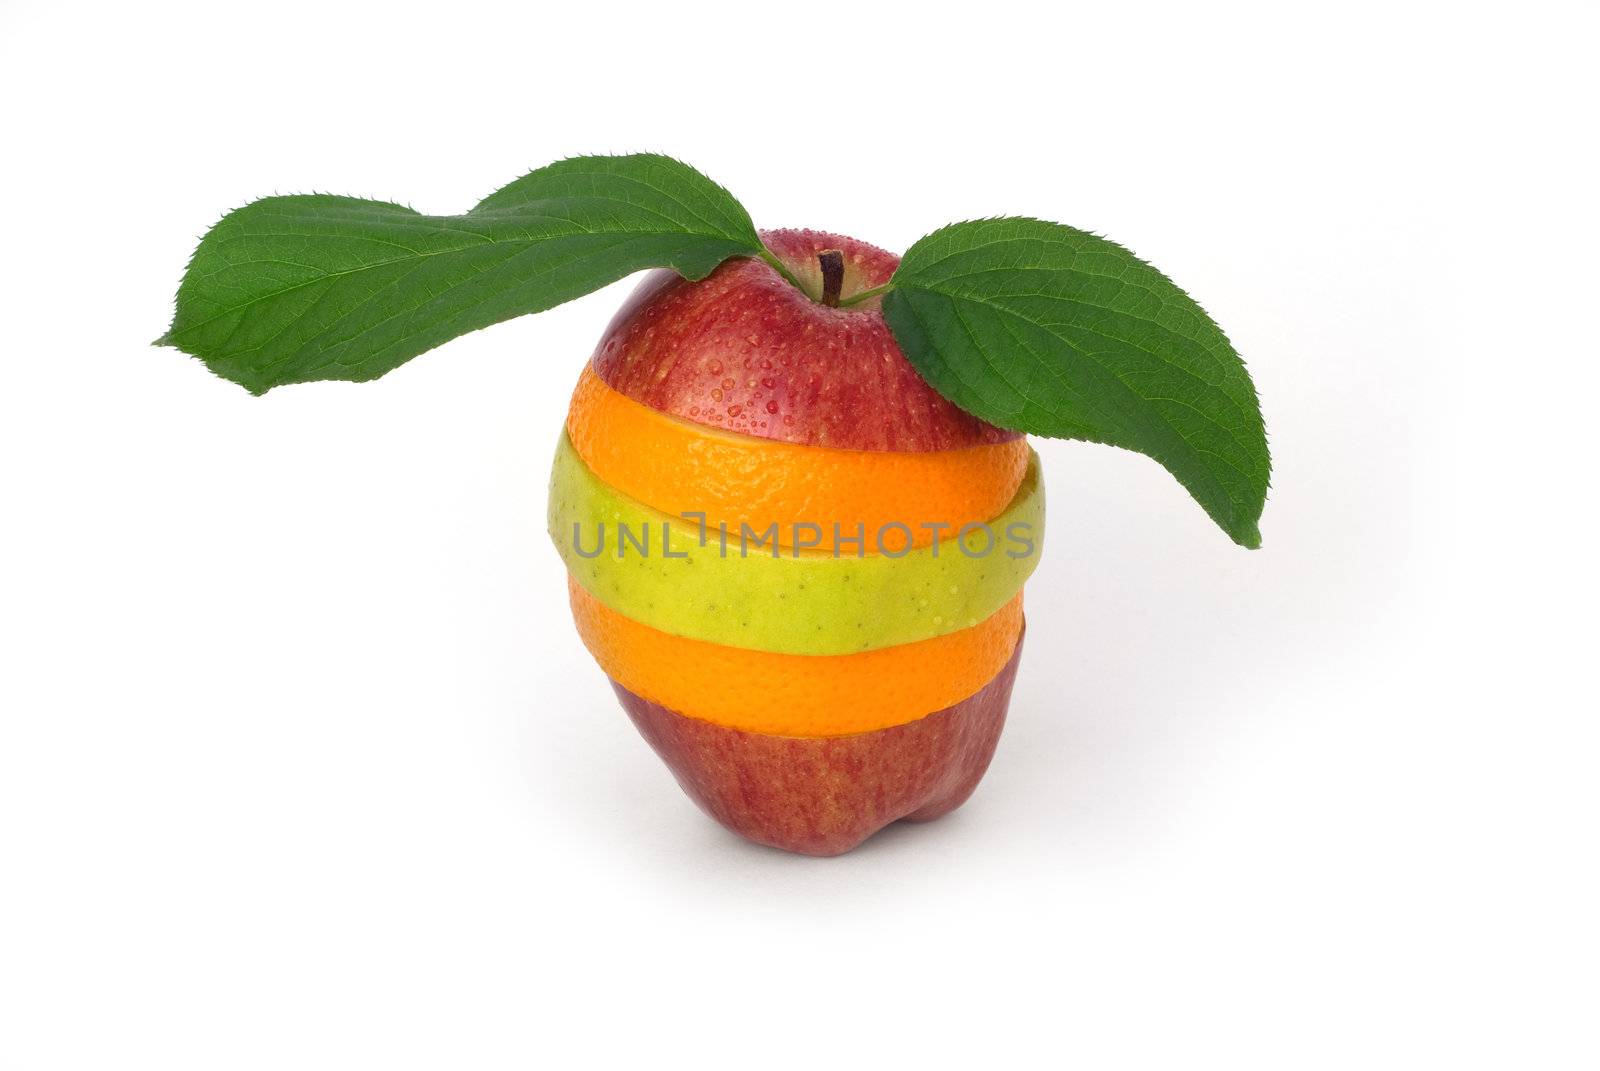 Mixed fruits on white background